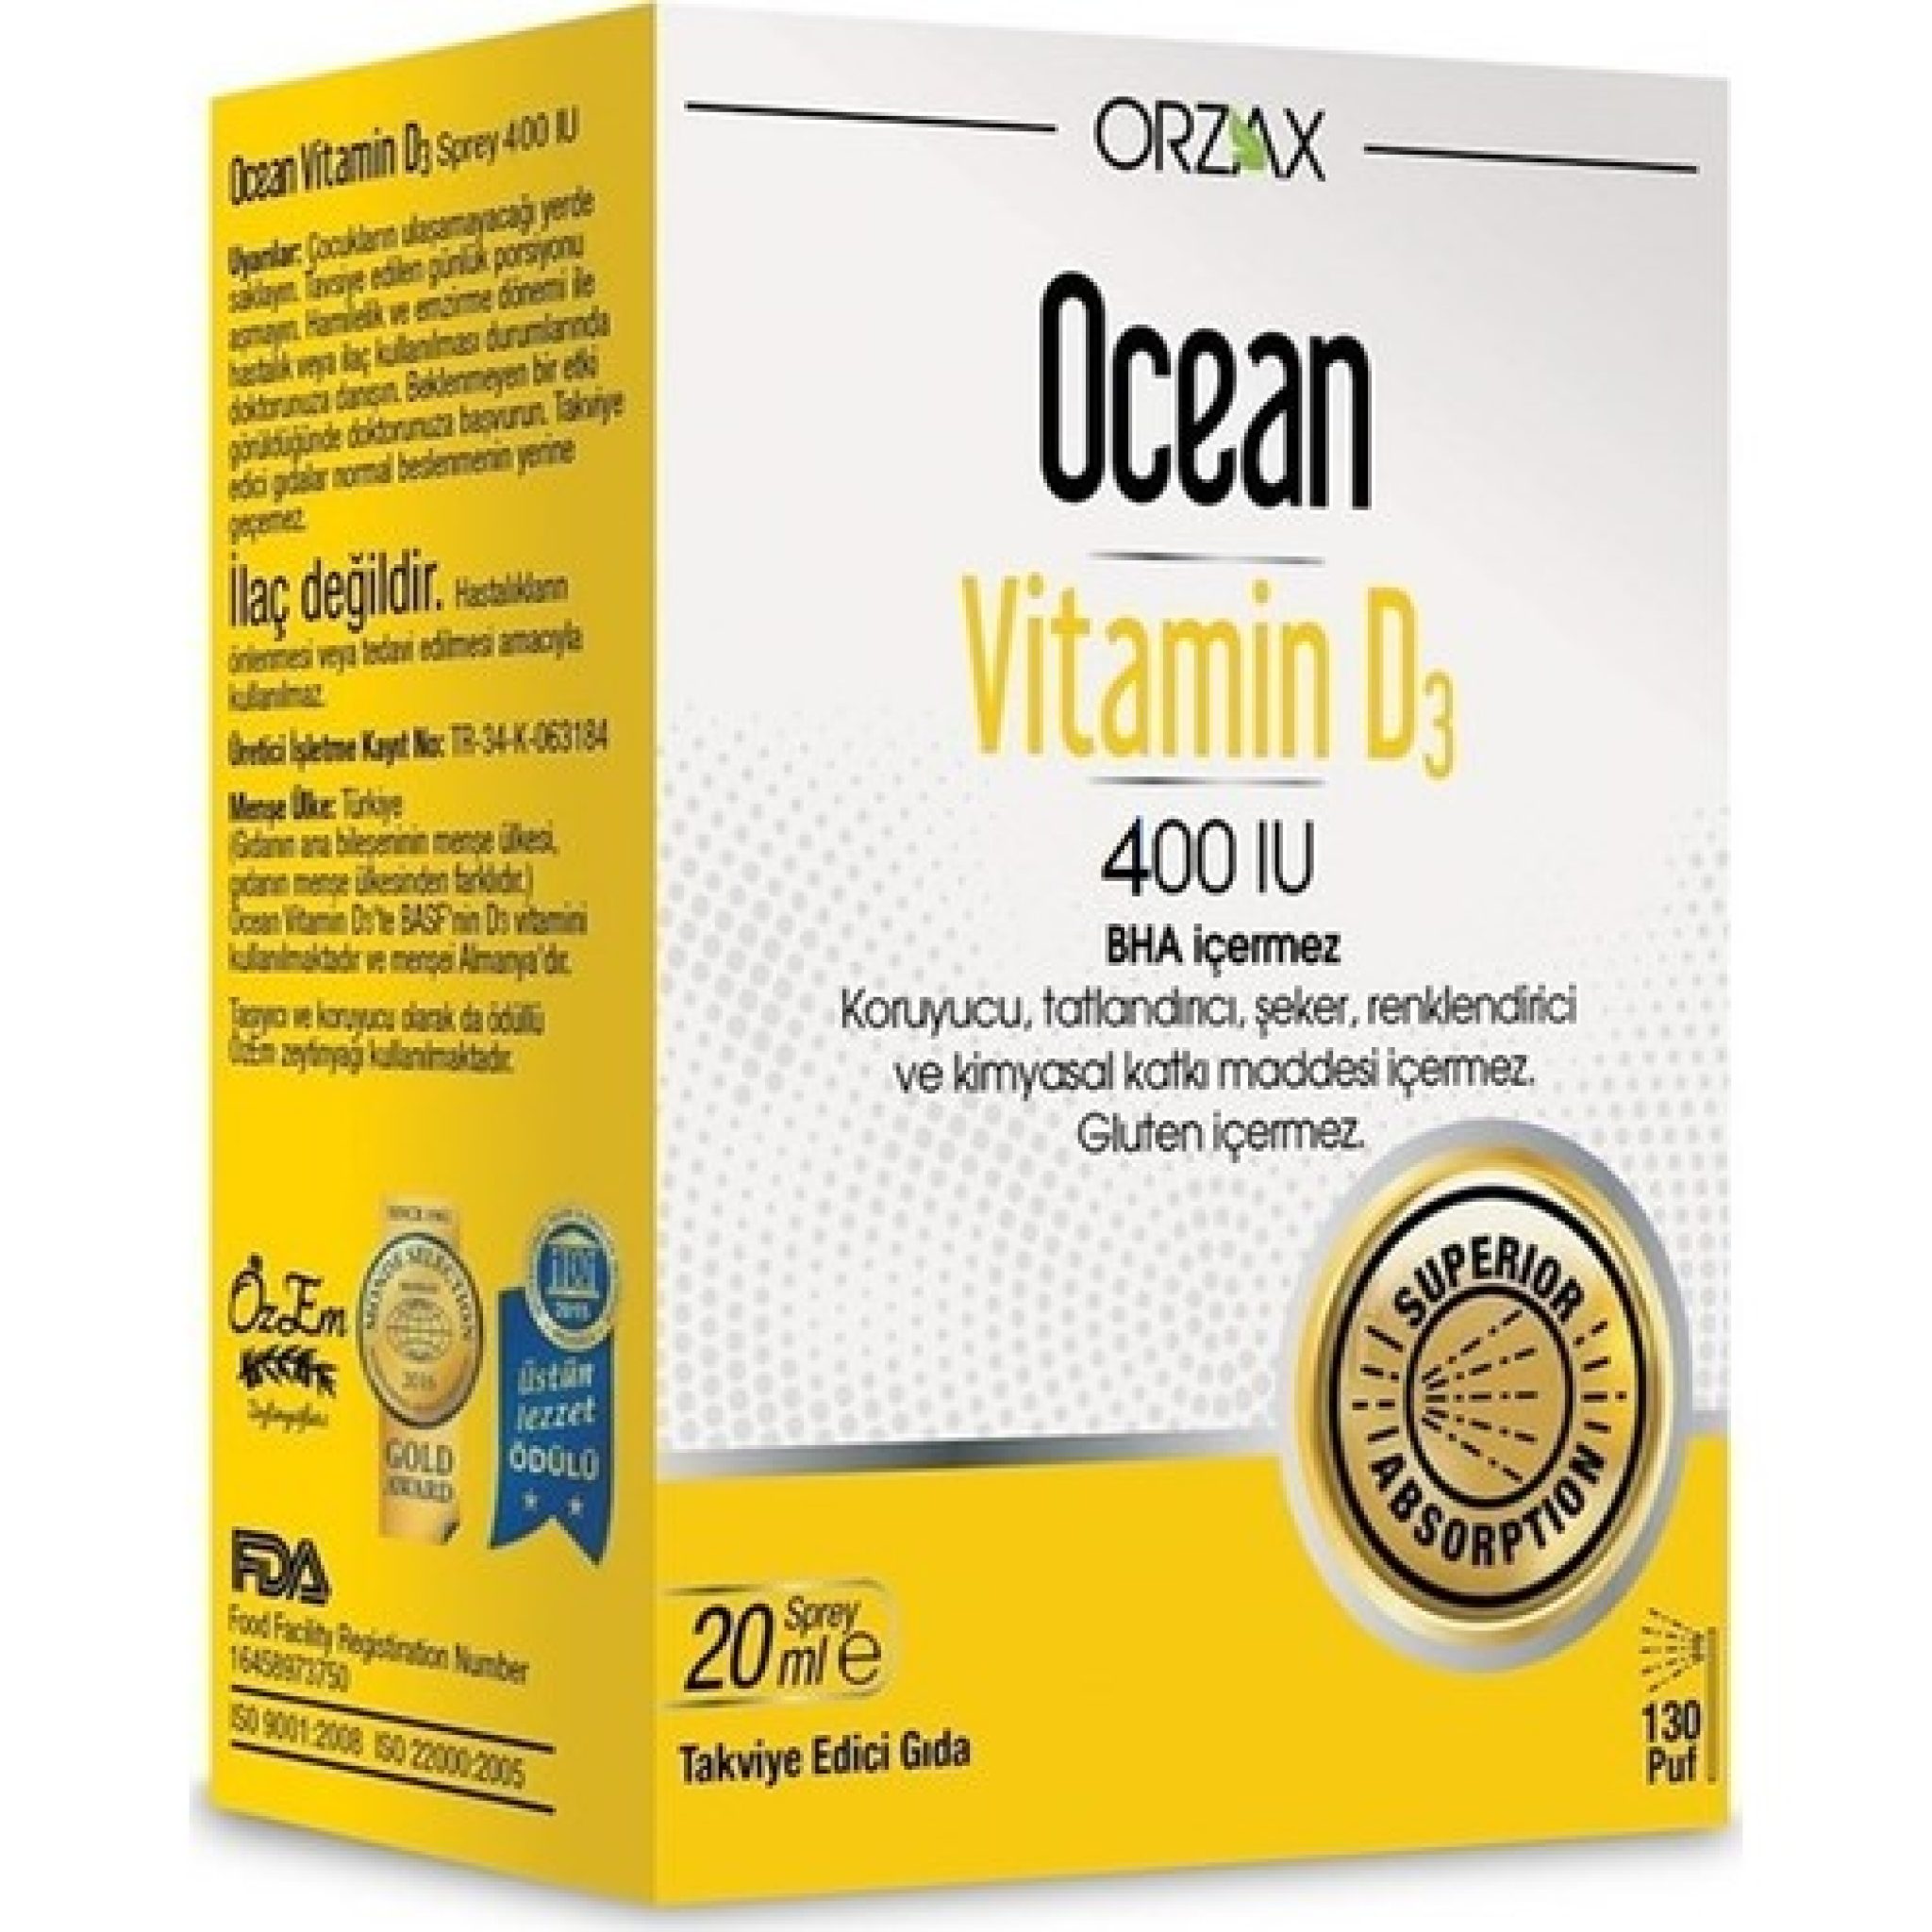 Ocean Vitamin D3 600 IU 20 ml Sprey Eczago